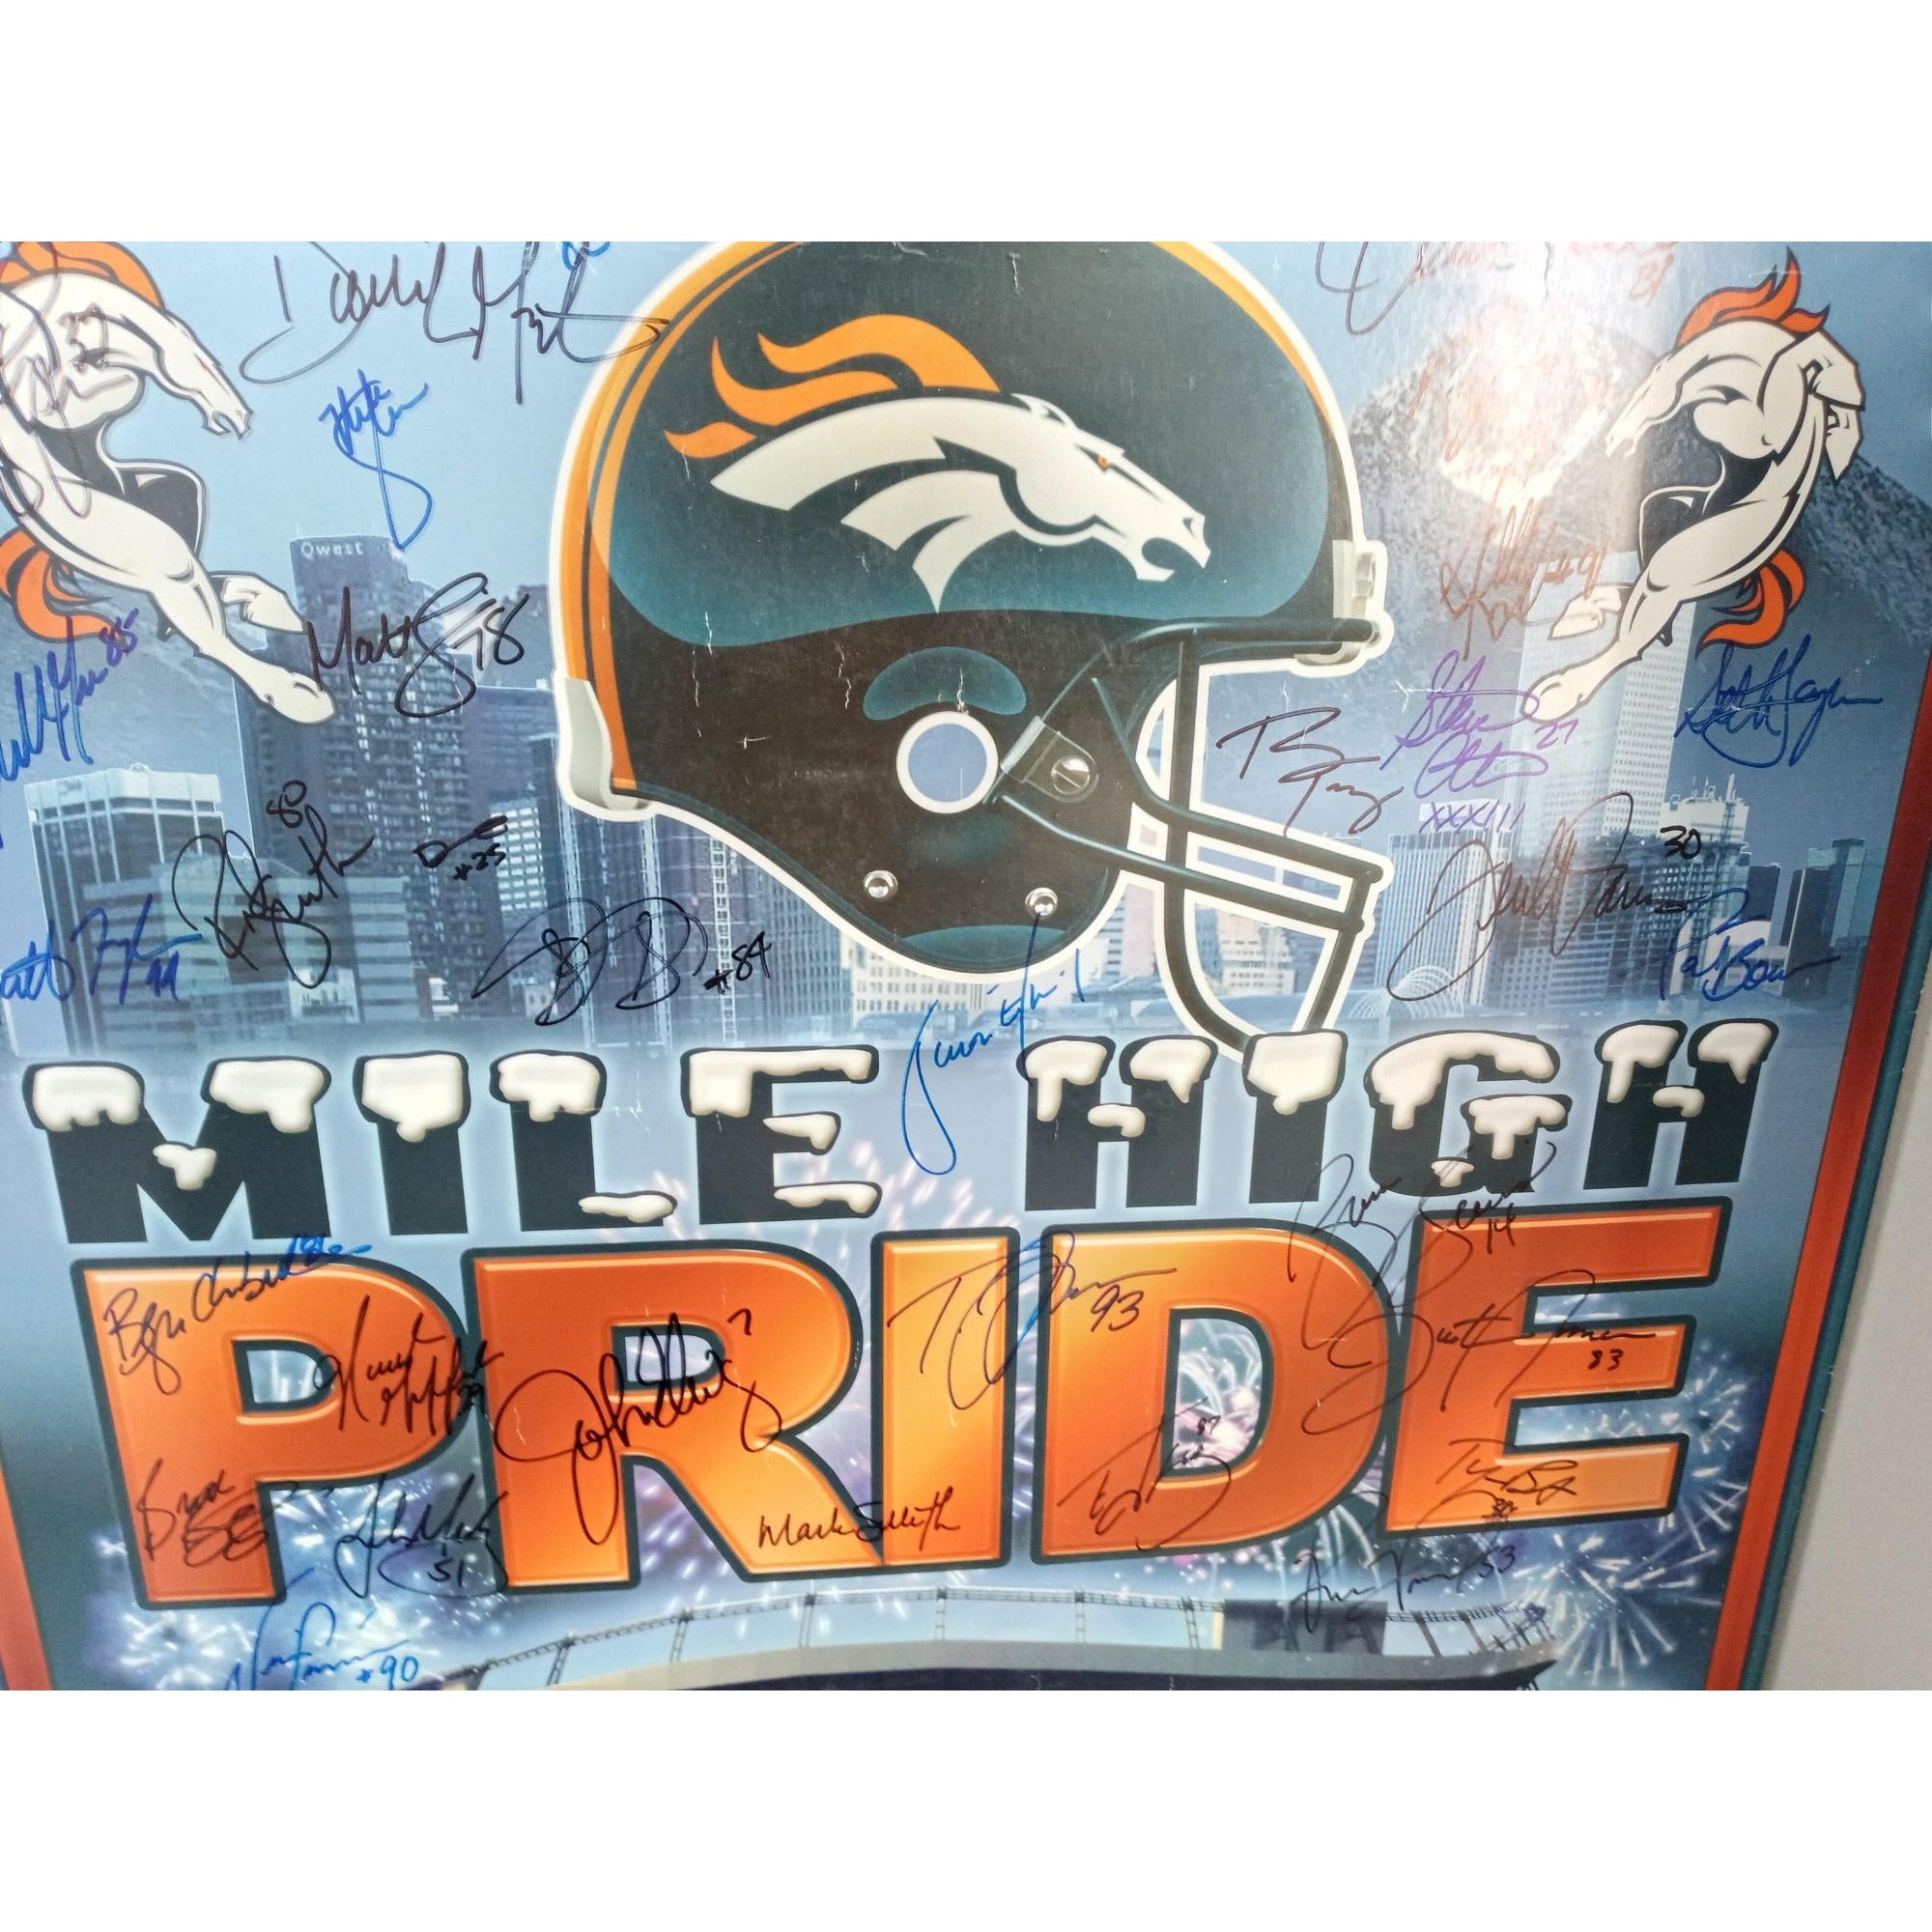 John Elway Denver Broncos Super Bowl champs signed poster